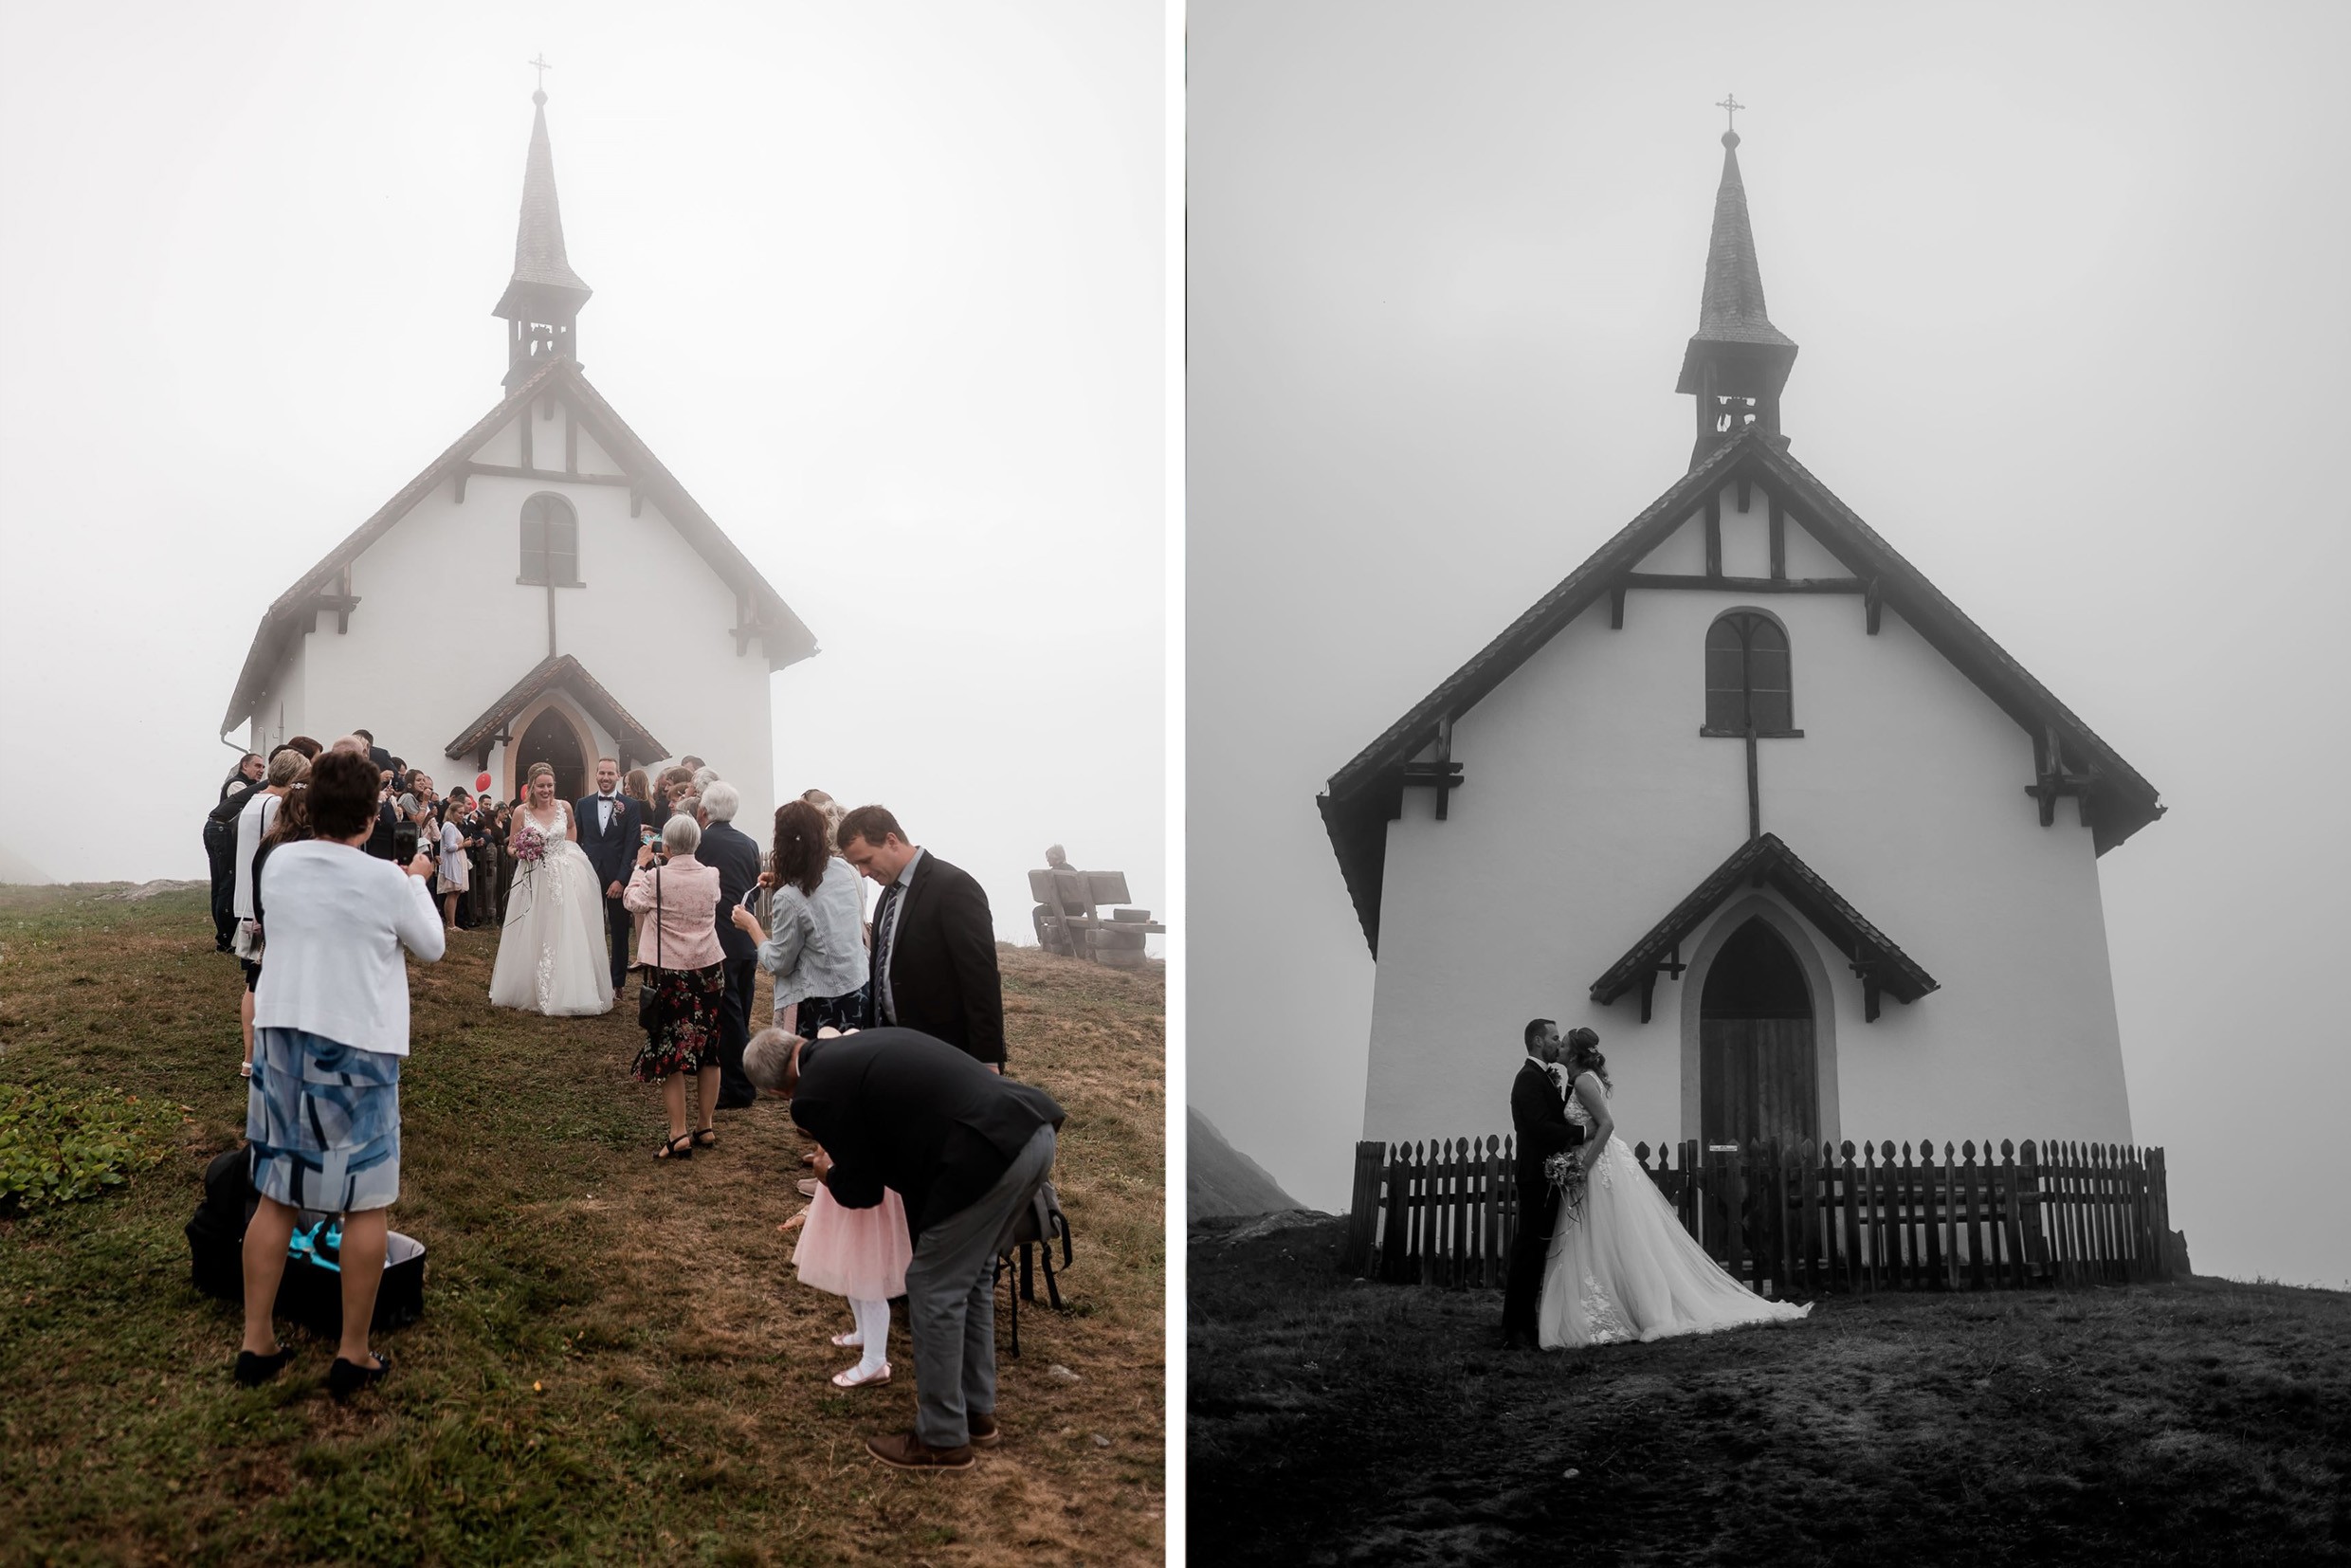 Aida + Tim | Hochzeitsfotografen am Bodensee Hochzeit - Belalp, Schweiz  - Hochzeitsfotografie von Aida und Tim